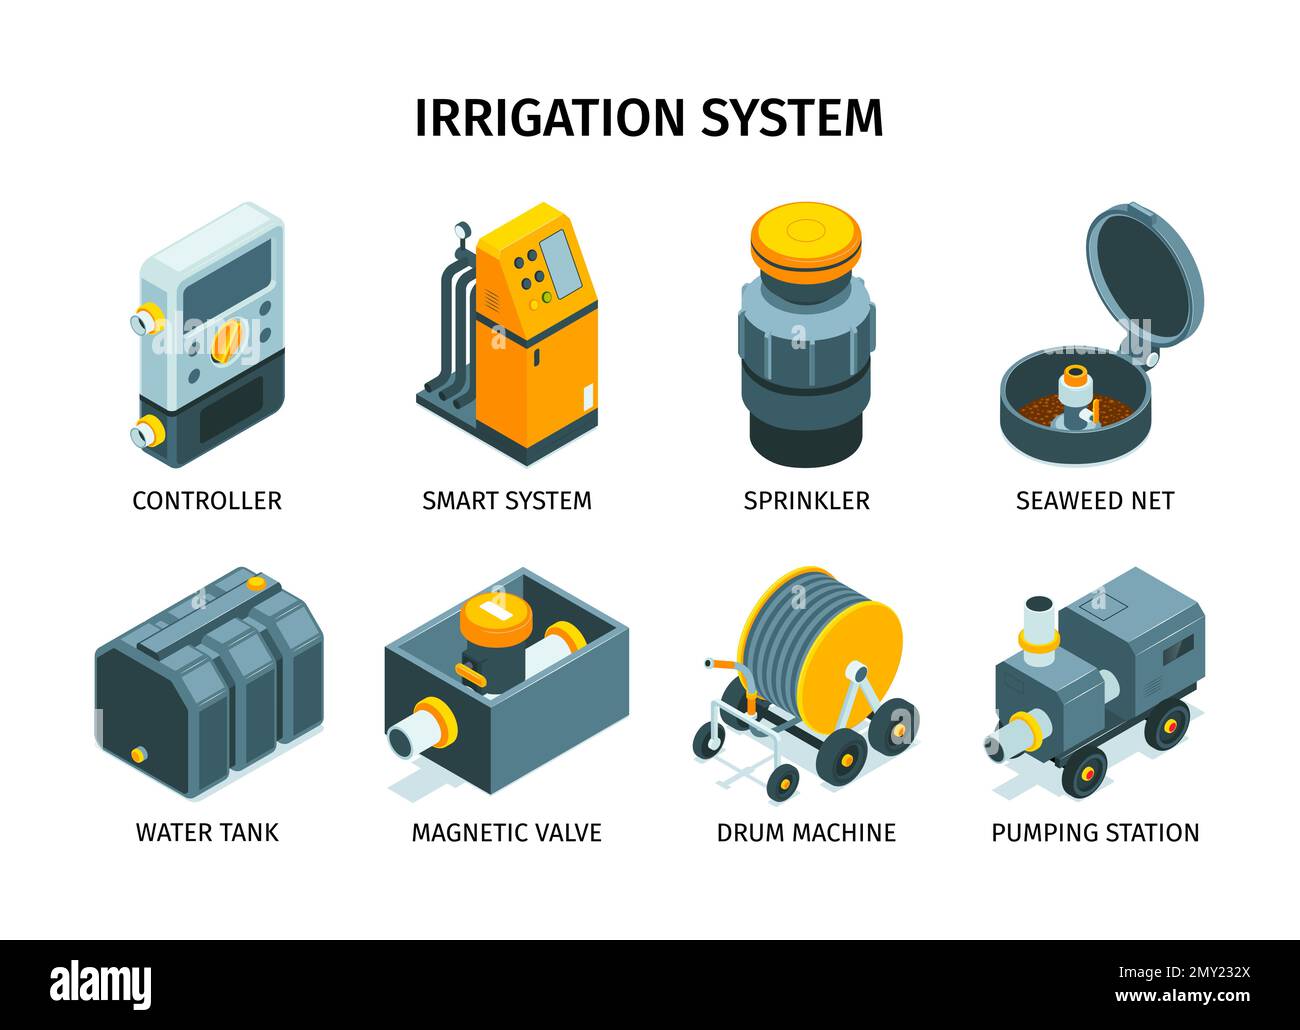 Icone isometriche degli impianti di irrigazione con didascalia, incluso controller macchina a tamburo stazione di pompaggio sprinkler isolato, illustrazione vettoriale Illustrazione Vettoriale